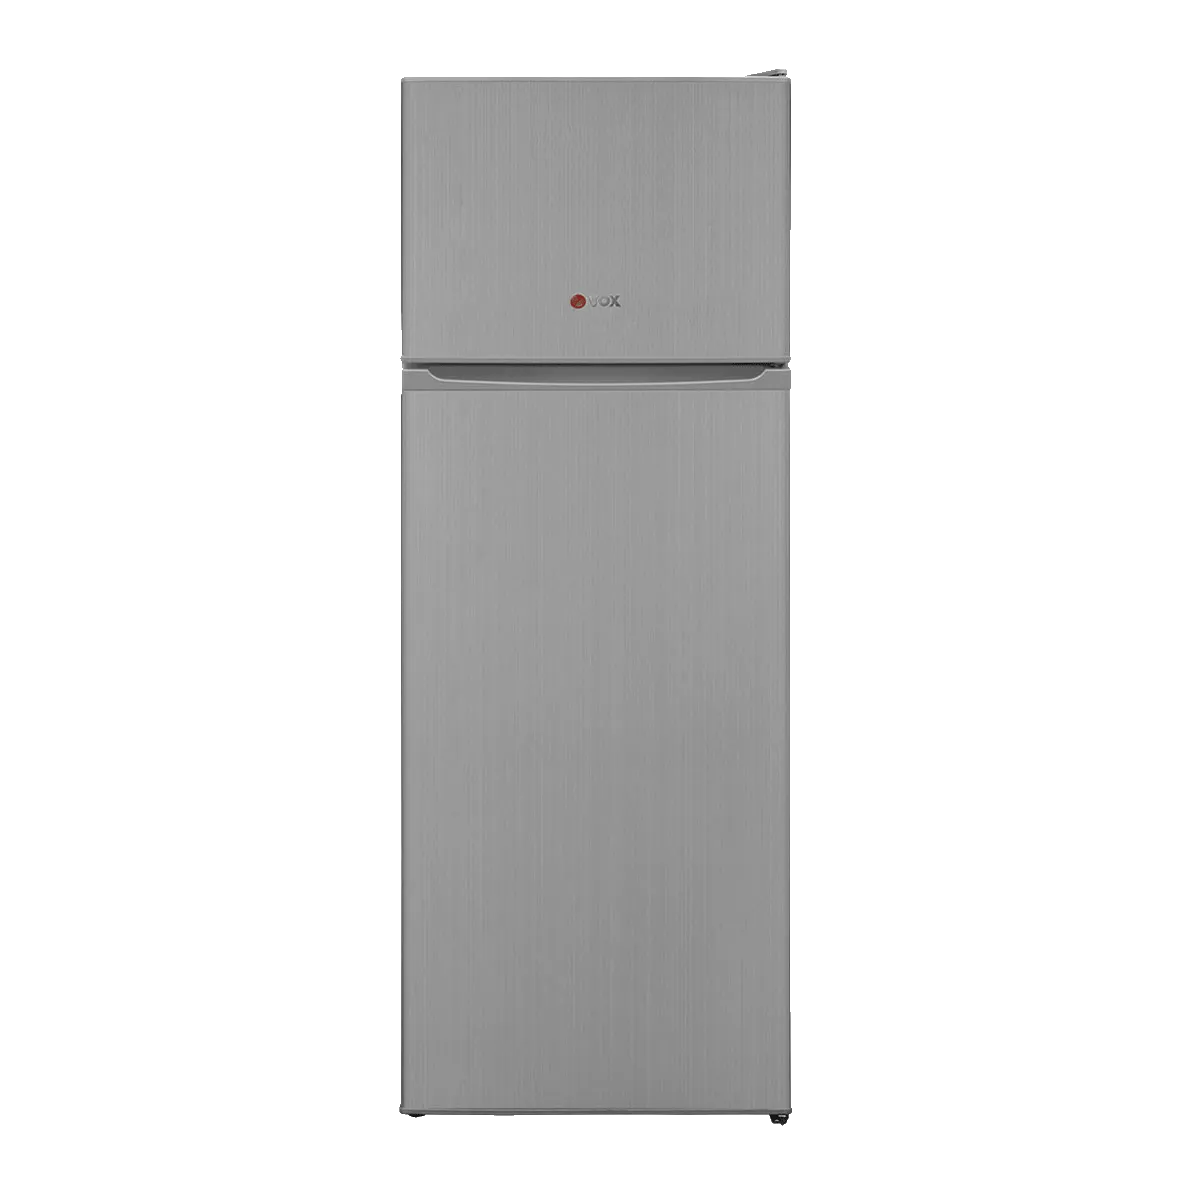 Refrigerator KG 2500 SE 